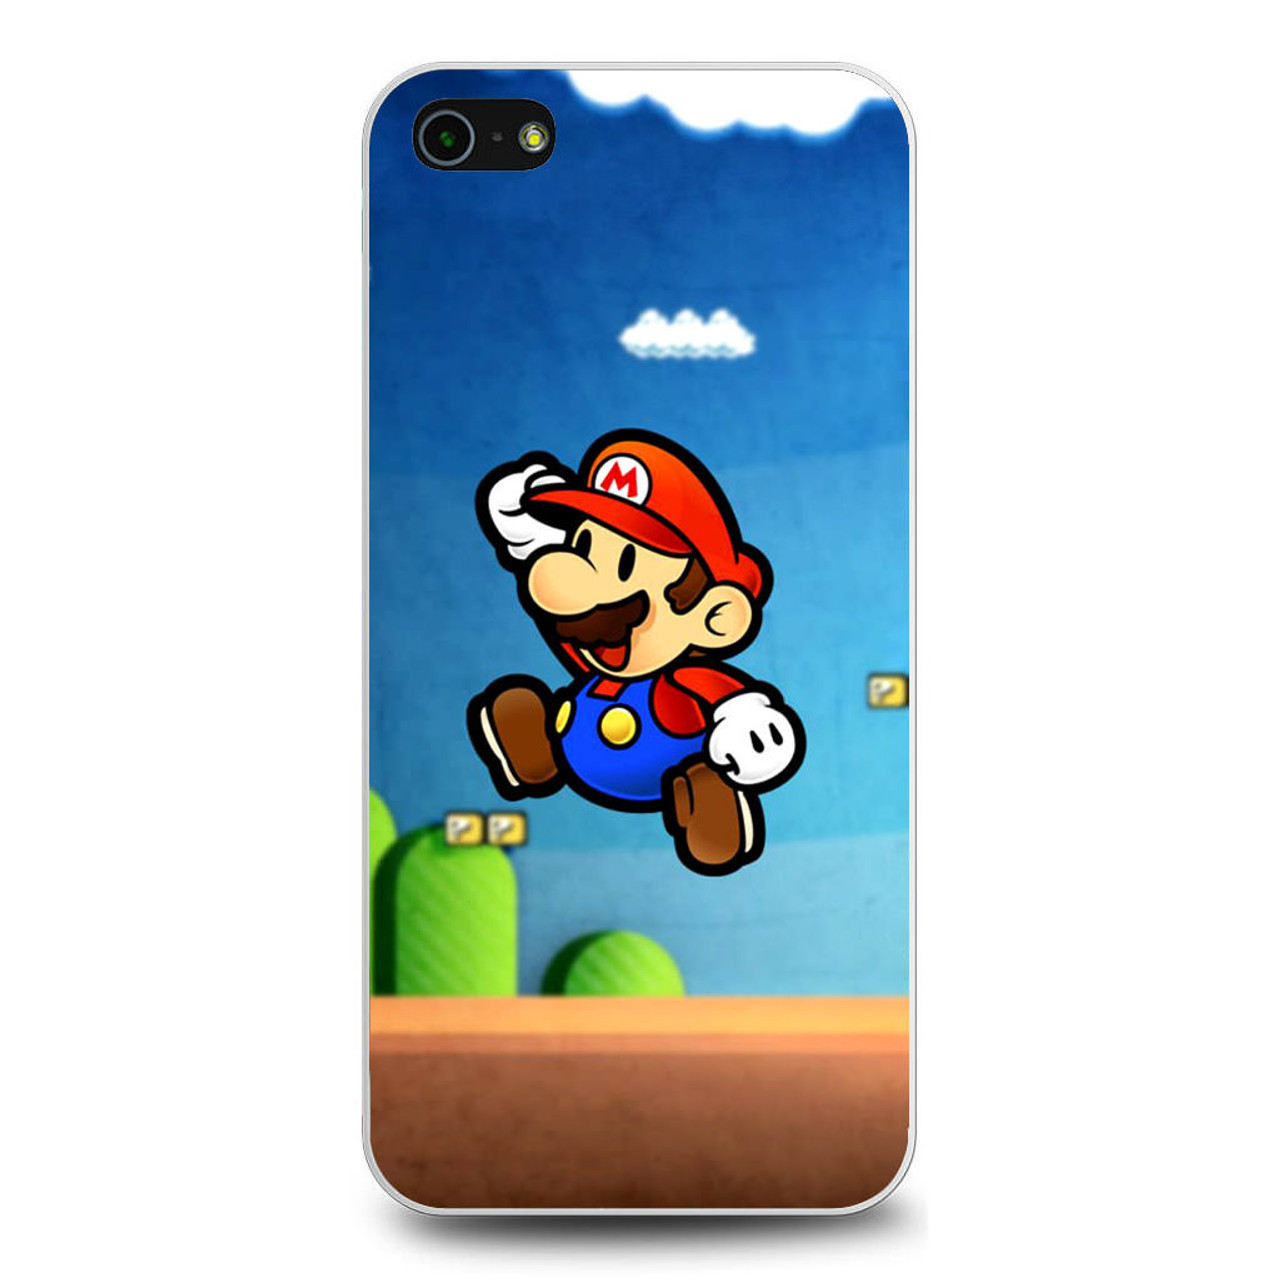 Super Mario Bros 2017 iPhone 5/5S/SE Case